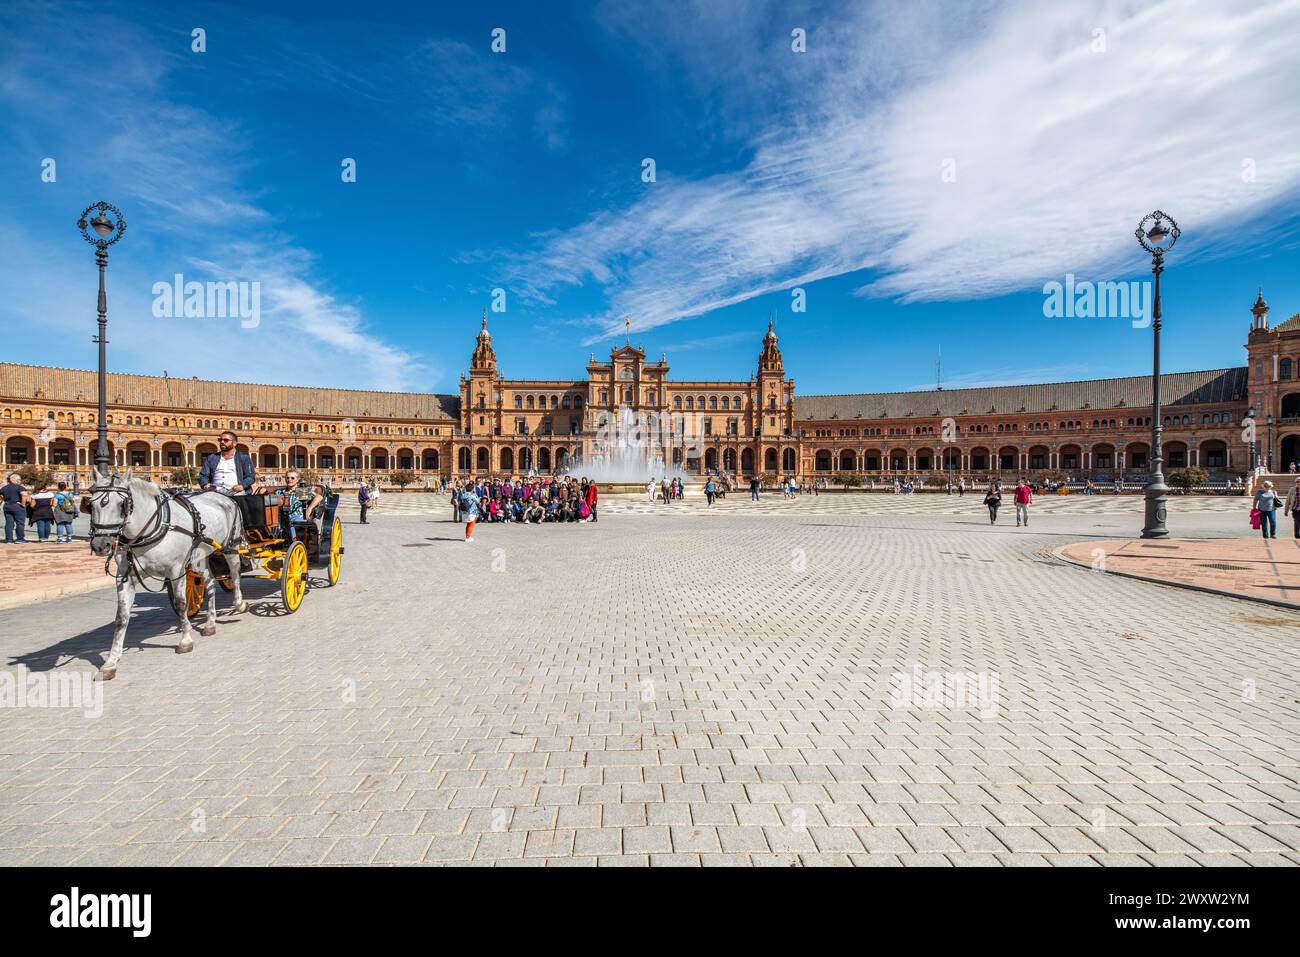 Vue partielle du centre Plaza de España avec touristes, fontaine et calèche. Banque D'Images